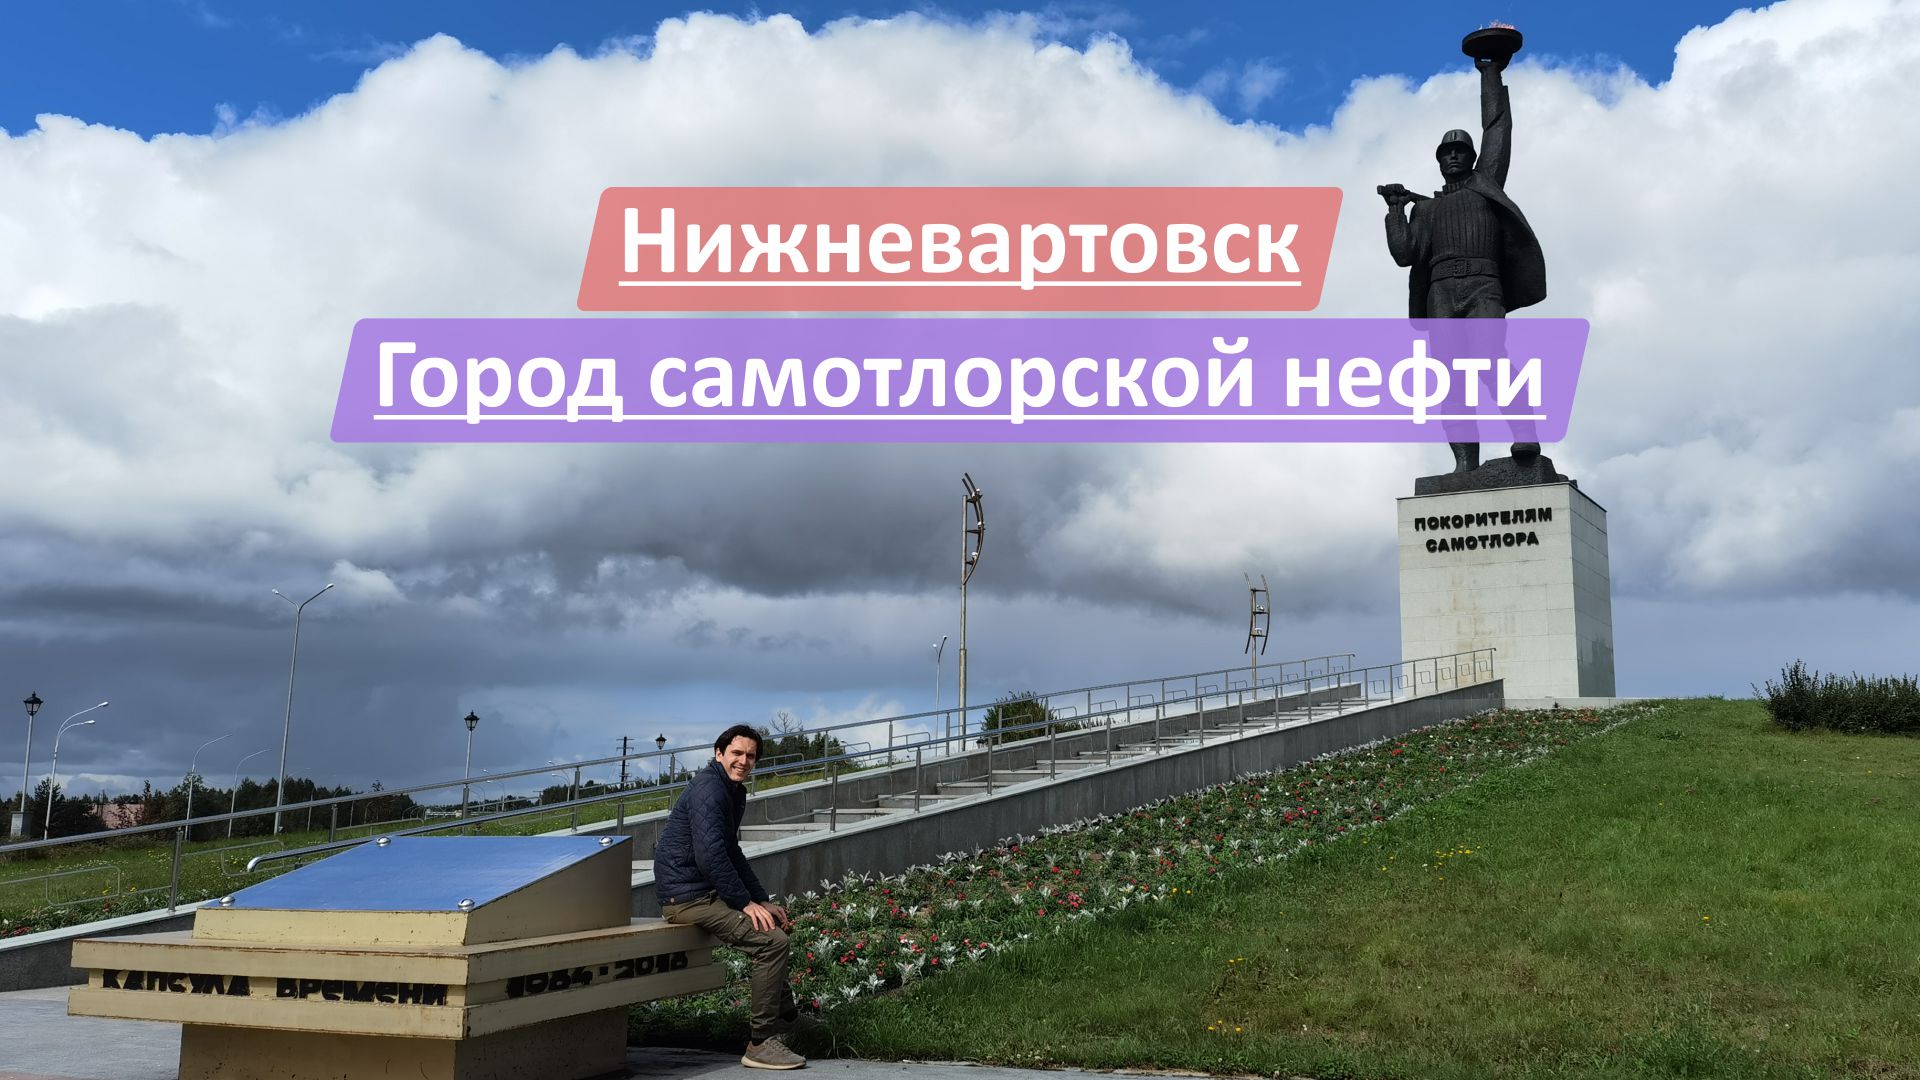 Нижневартовск, Ханты-Мансийский автономный округ-Югра (ХМАО-Югра) | Город самотлорской нефти